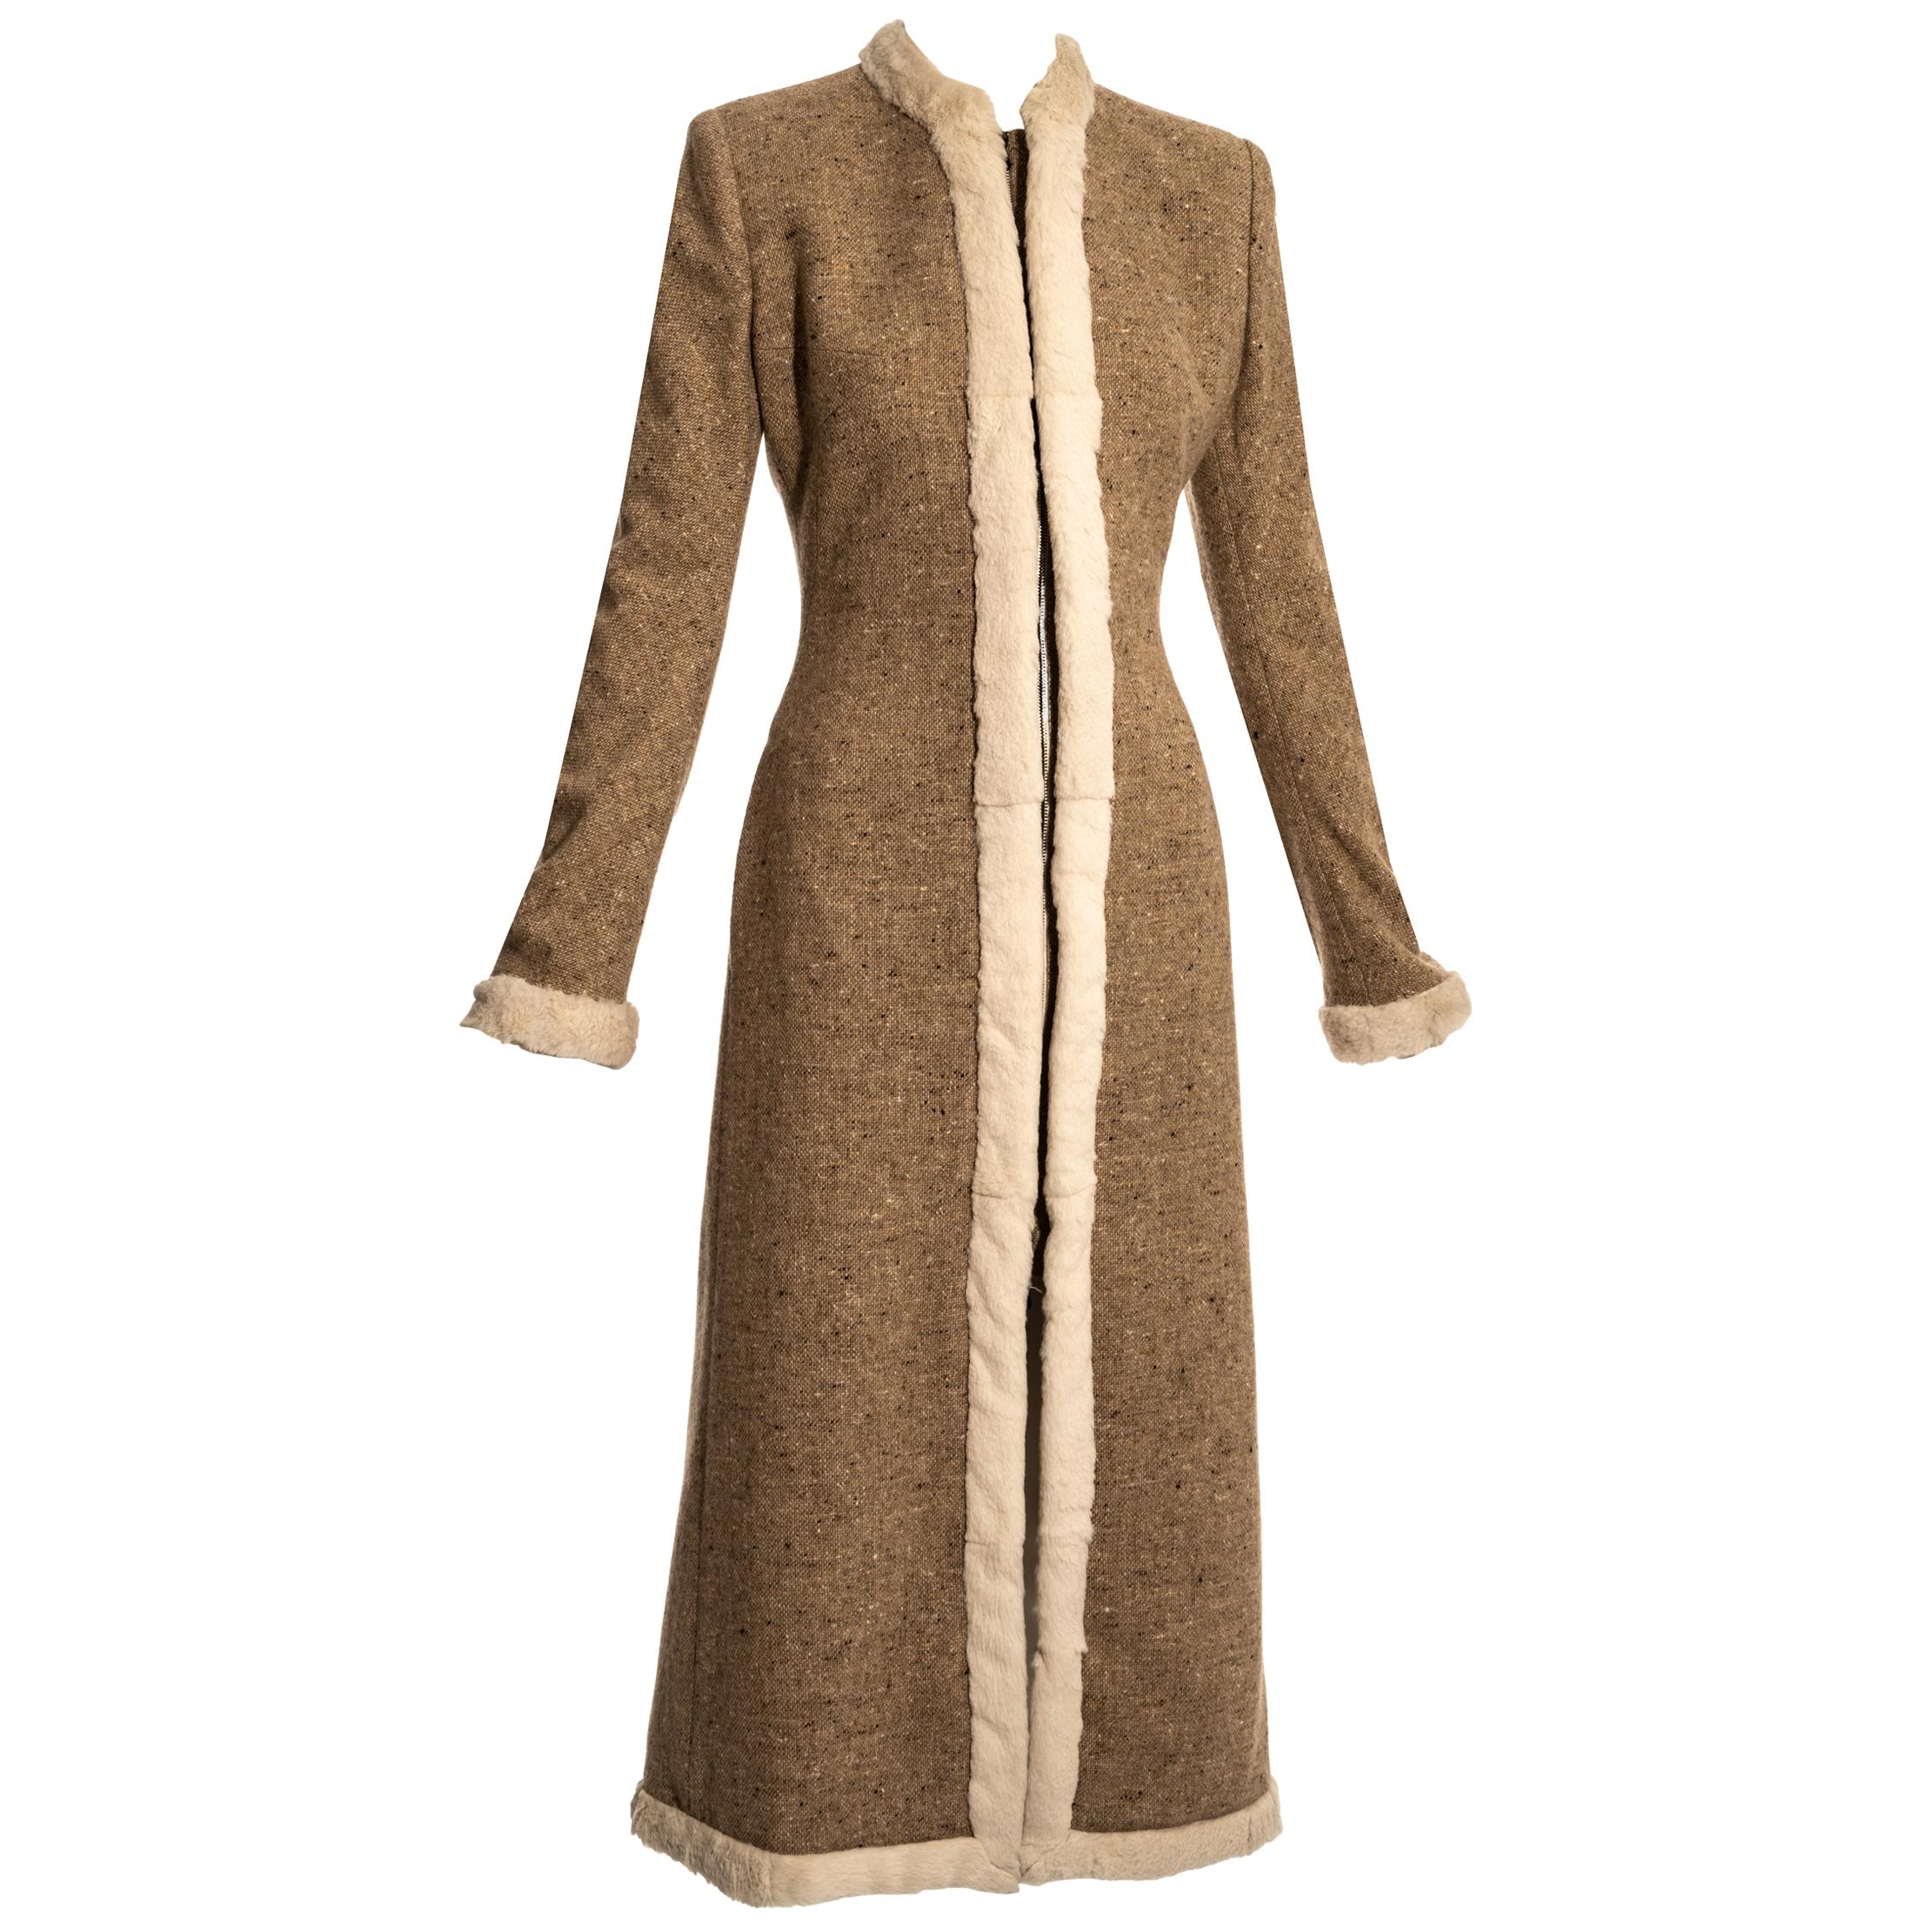 Alexander McQueen brown tweed coat with fur trim, pw 2003 For Sale